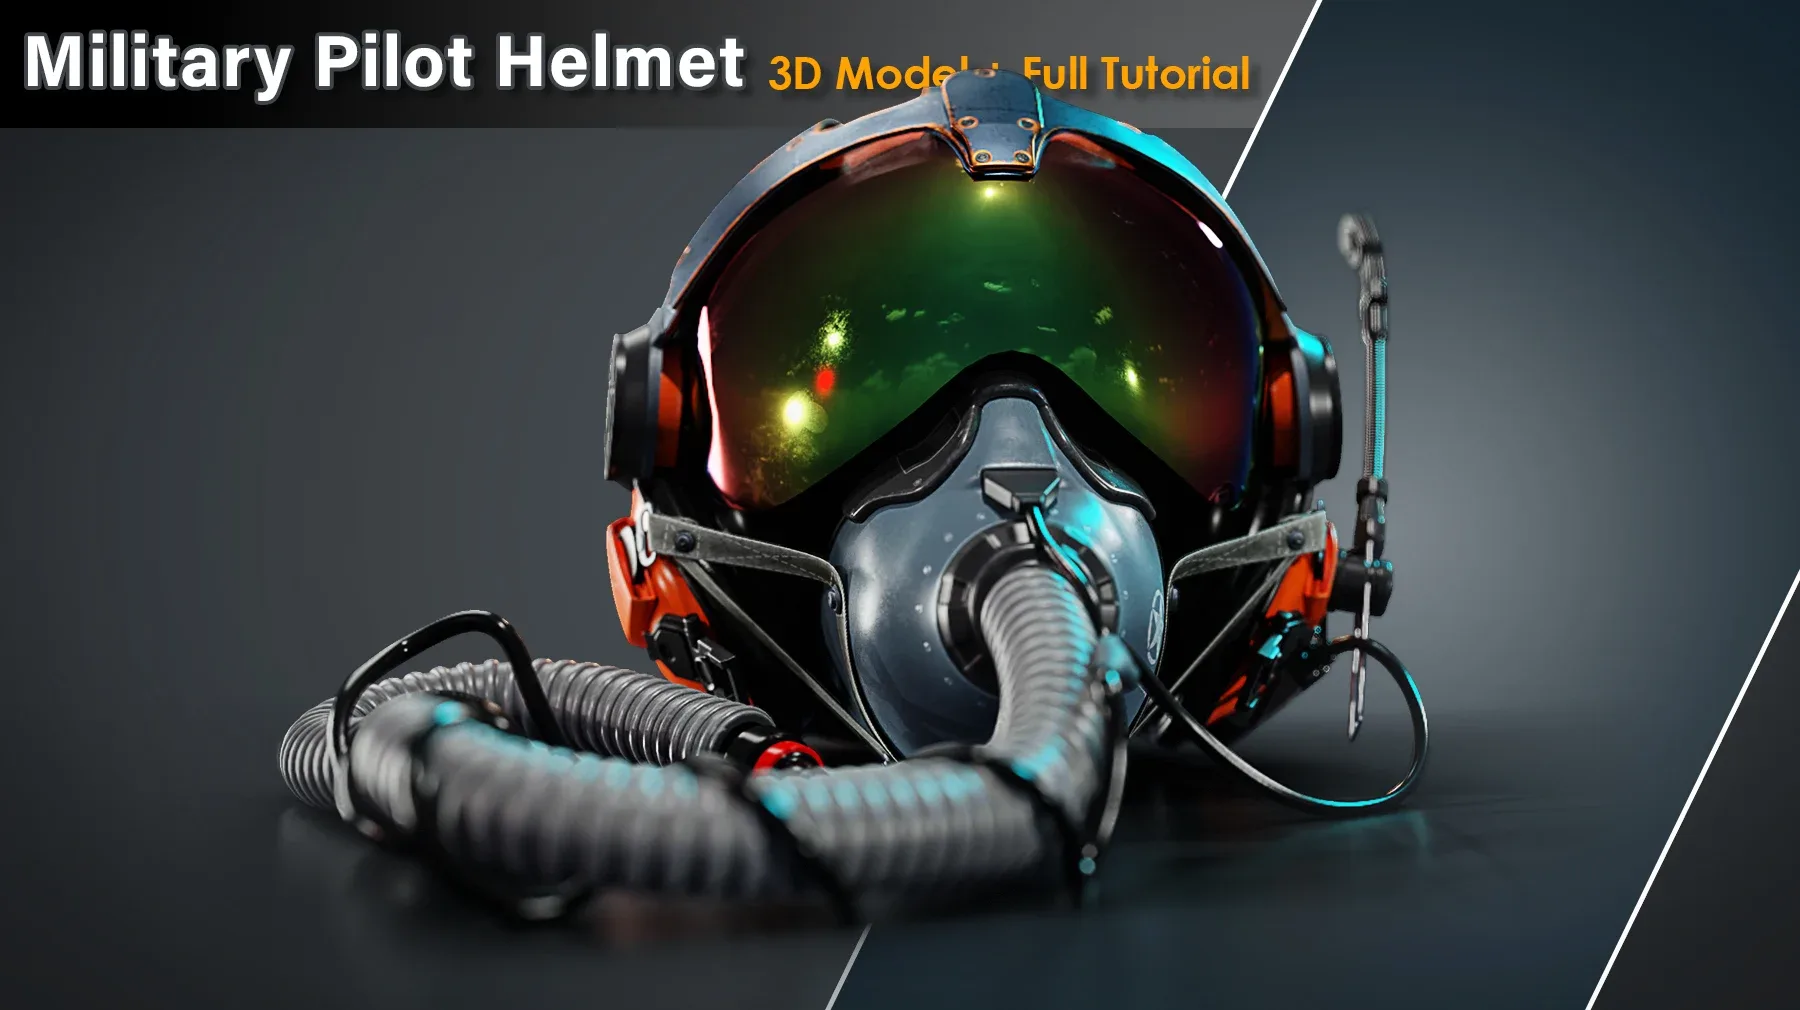 Military Pilot Helmet / Full Tutorial + 3D Model